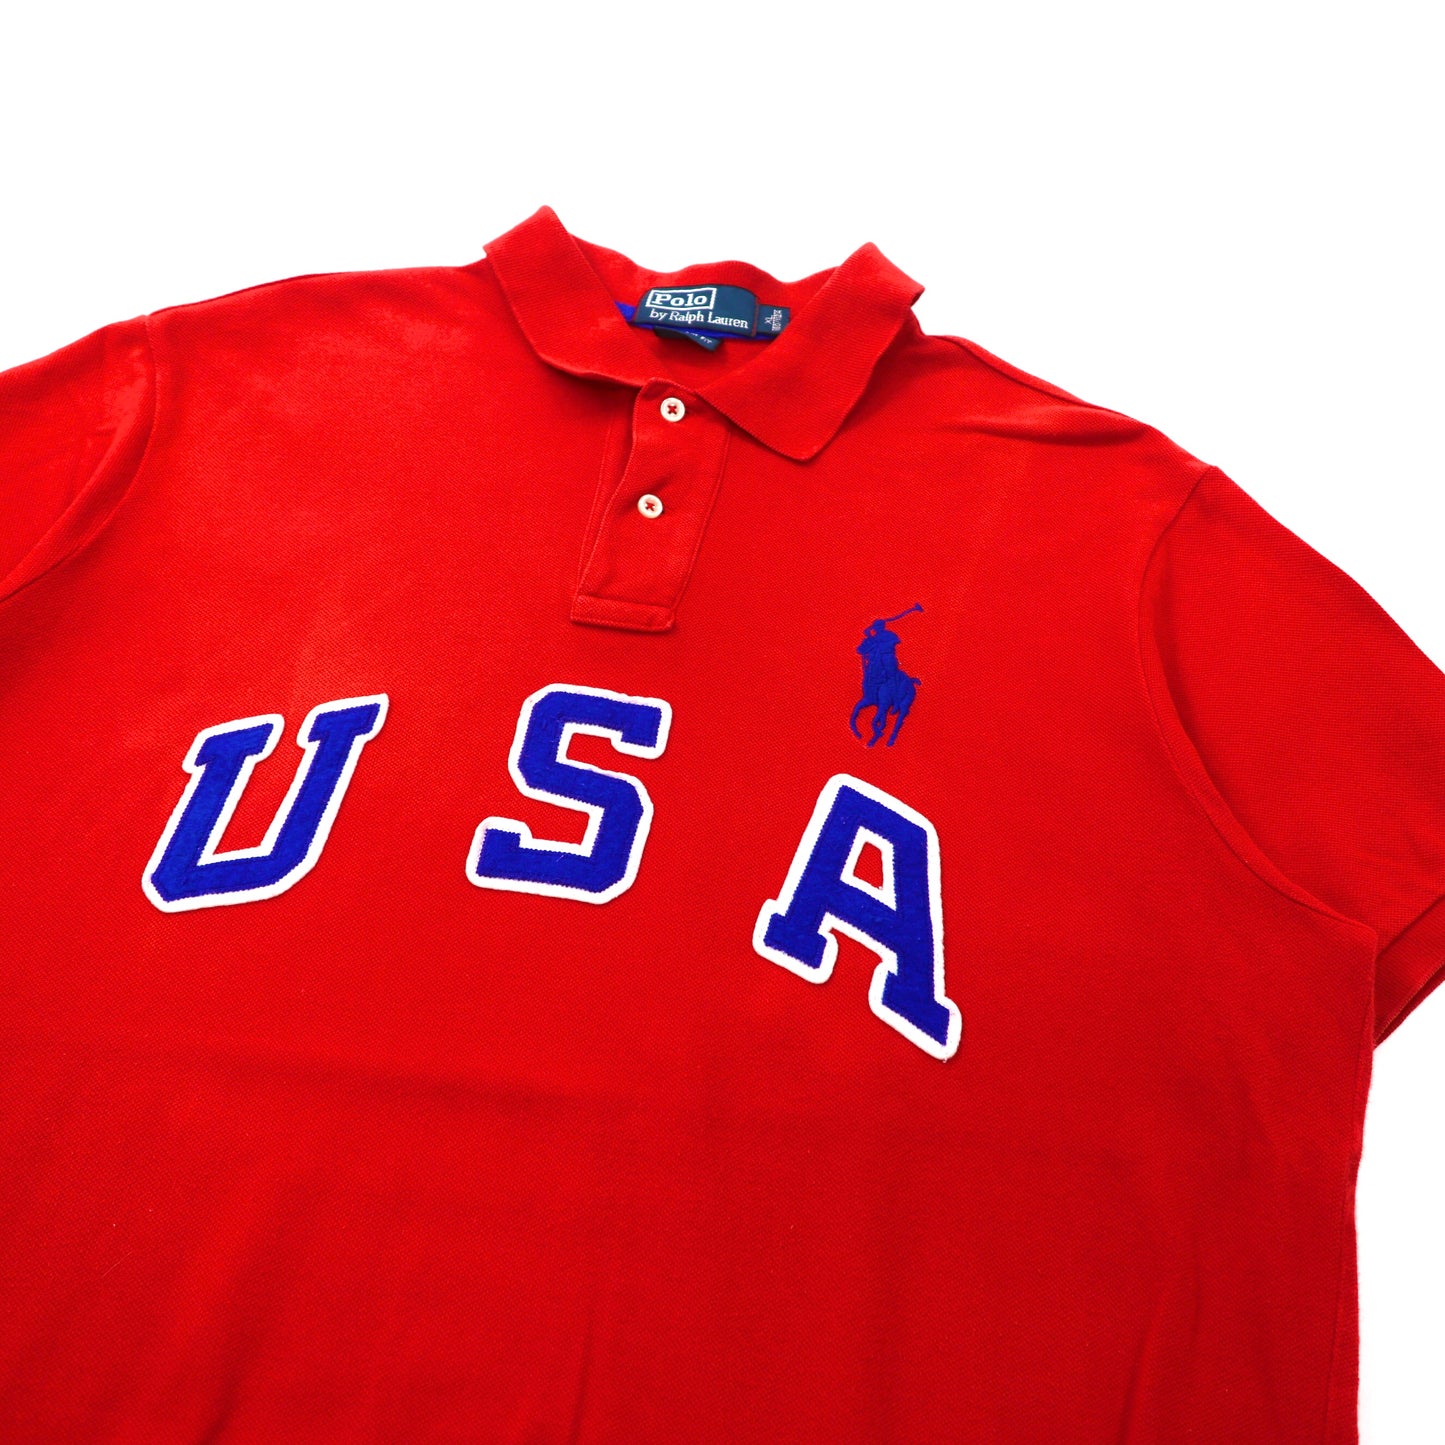 Polo by Ralph Lauren ポロシャツ XL レッド USA ナンバリング ビッグポニー刺繍